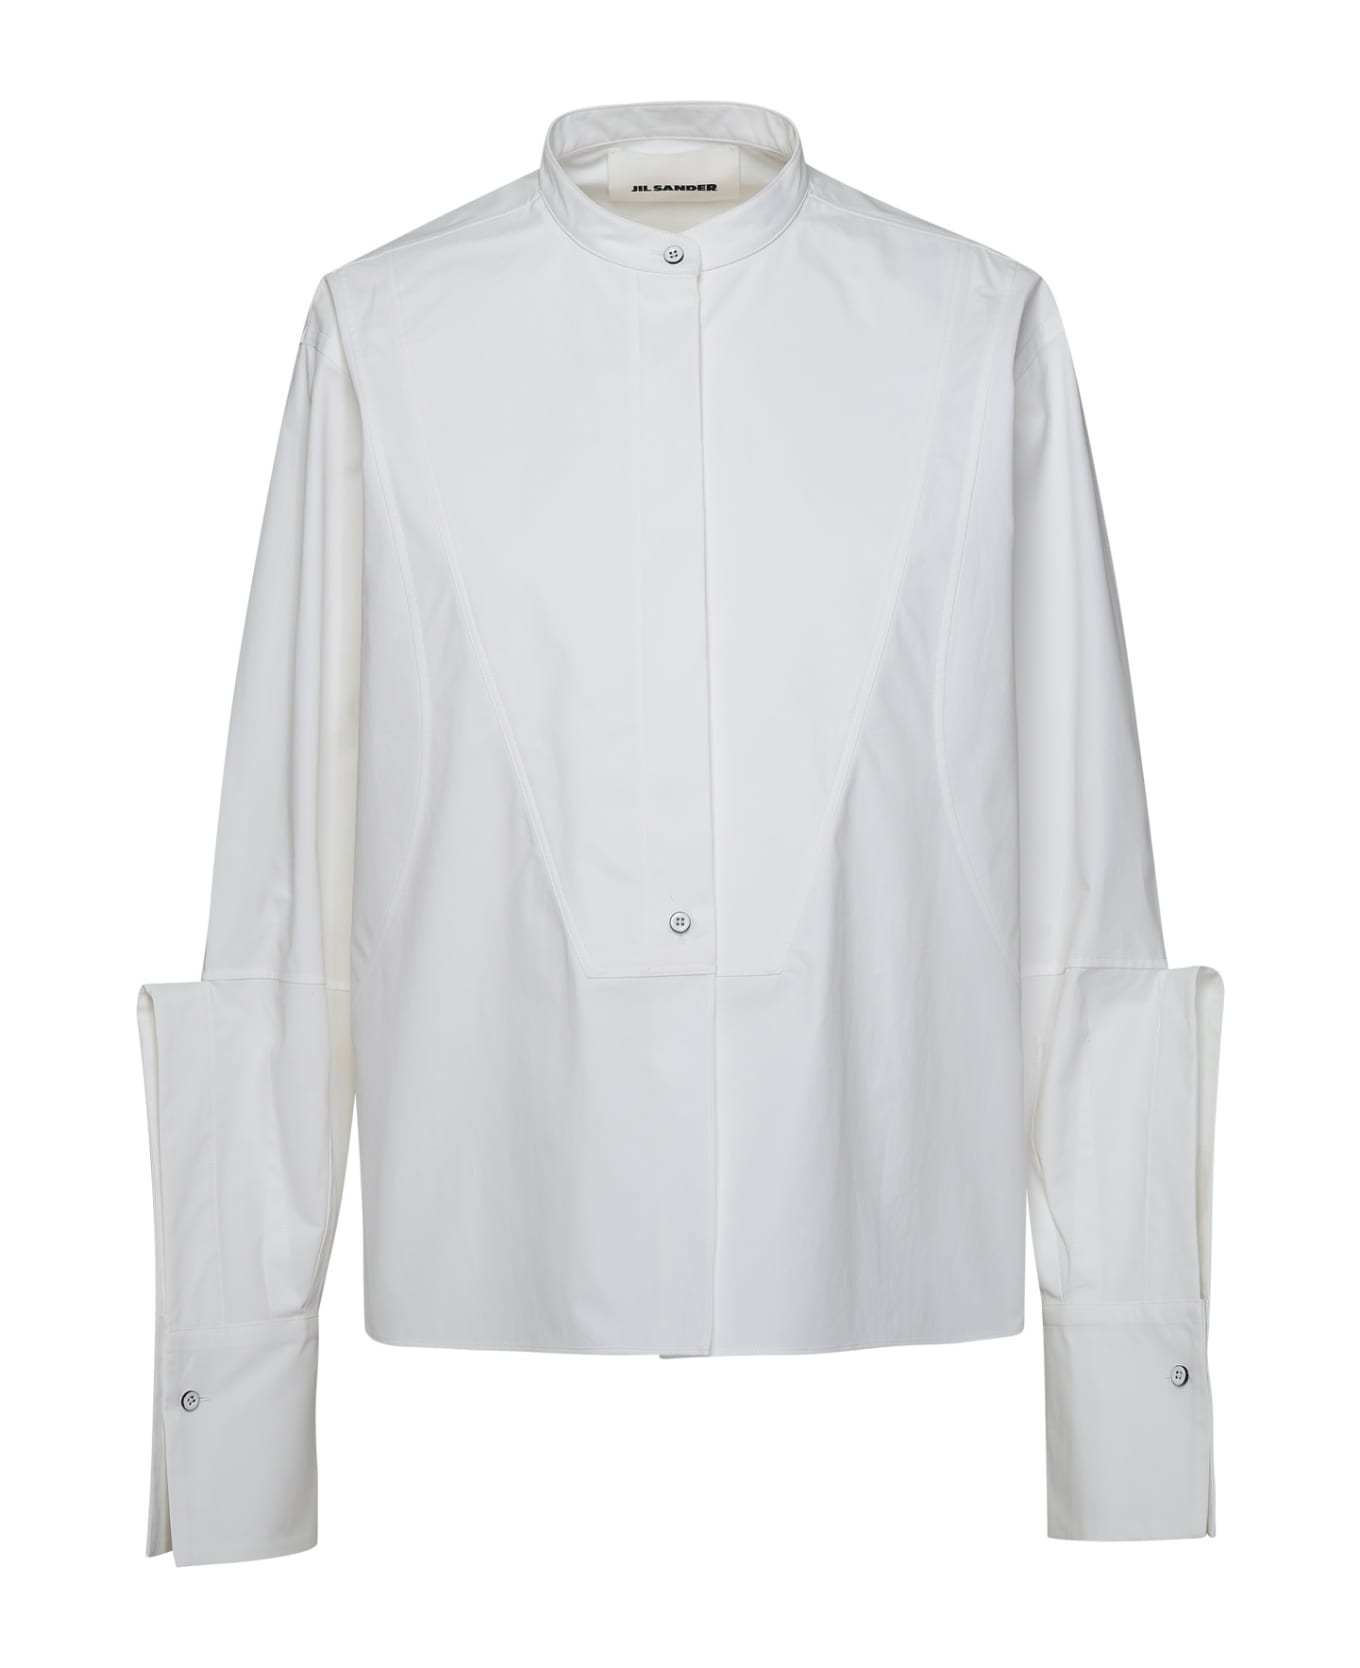 Jil Sander White Cotton Shirt - White